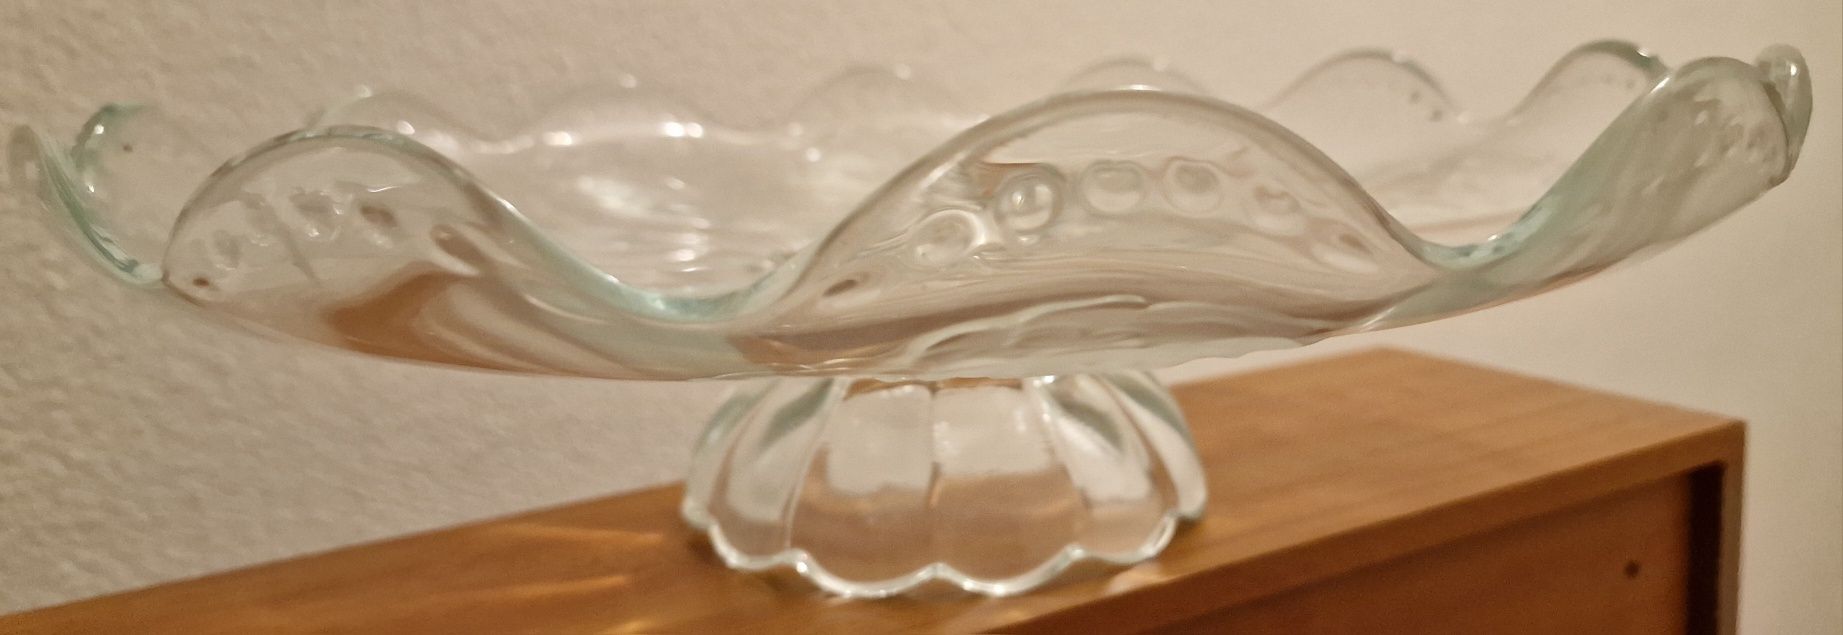 Fruteira vidro com efeitos decorativos